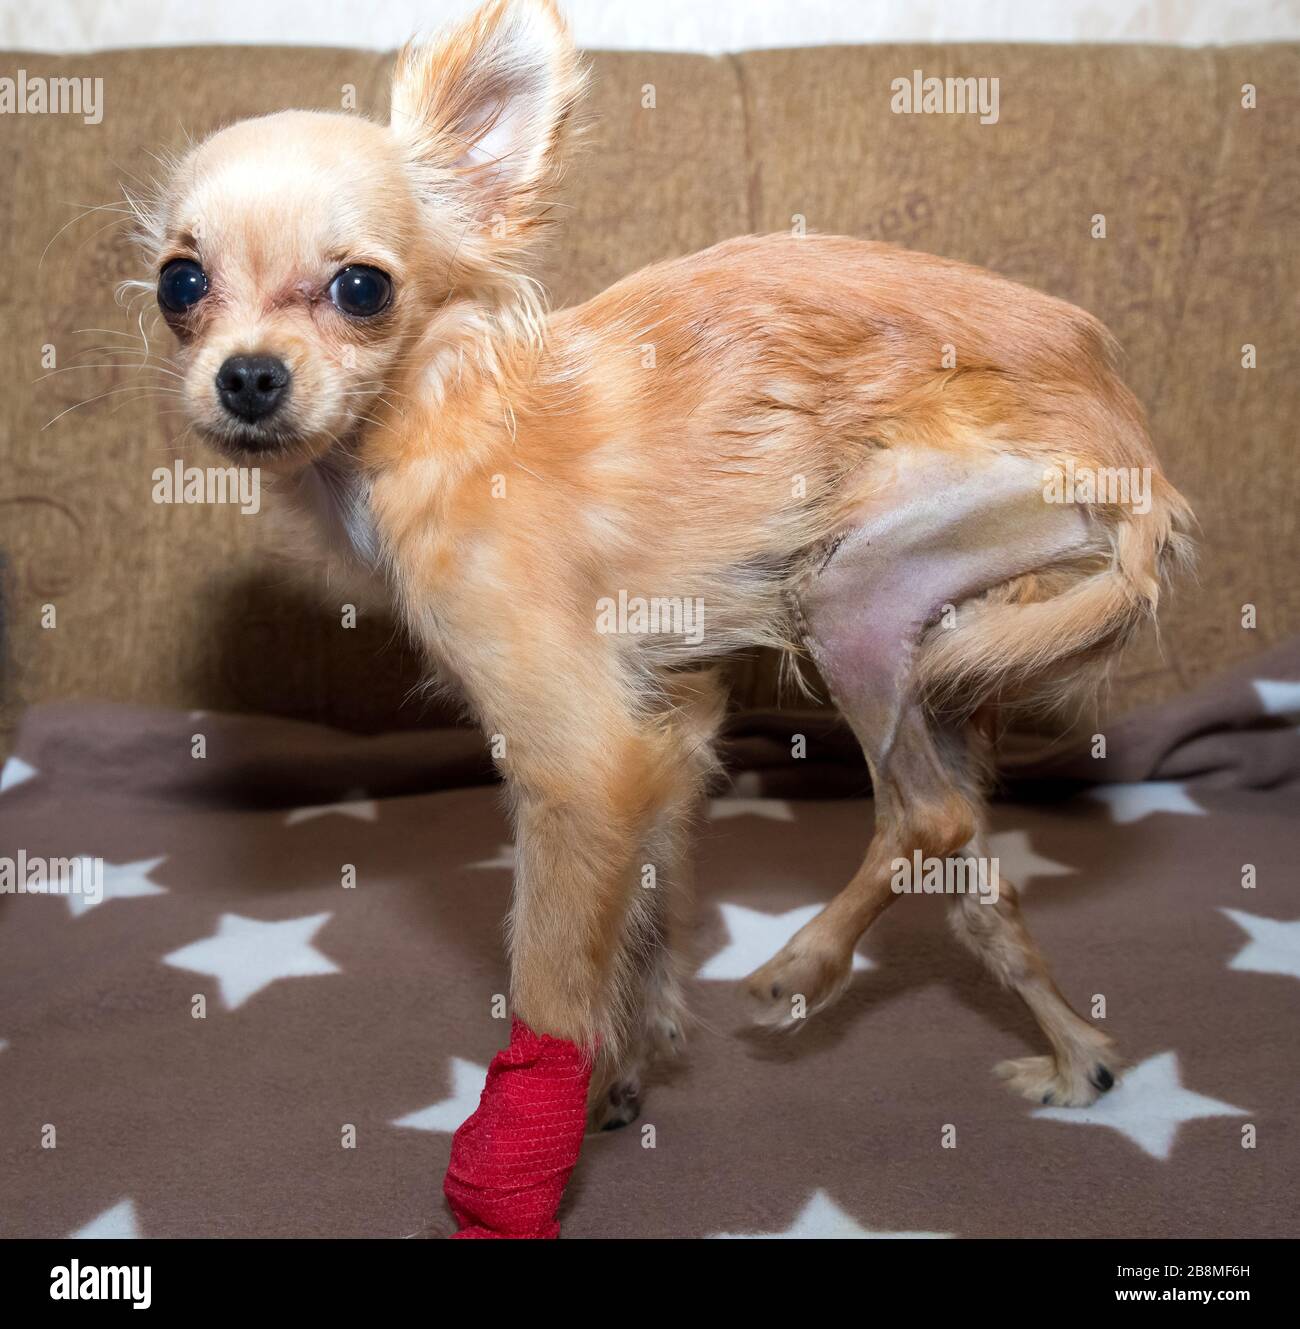 Lussazione rotulea in cane. Correzione chirurgica Foto Stock